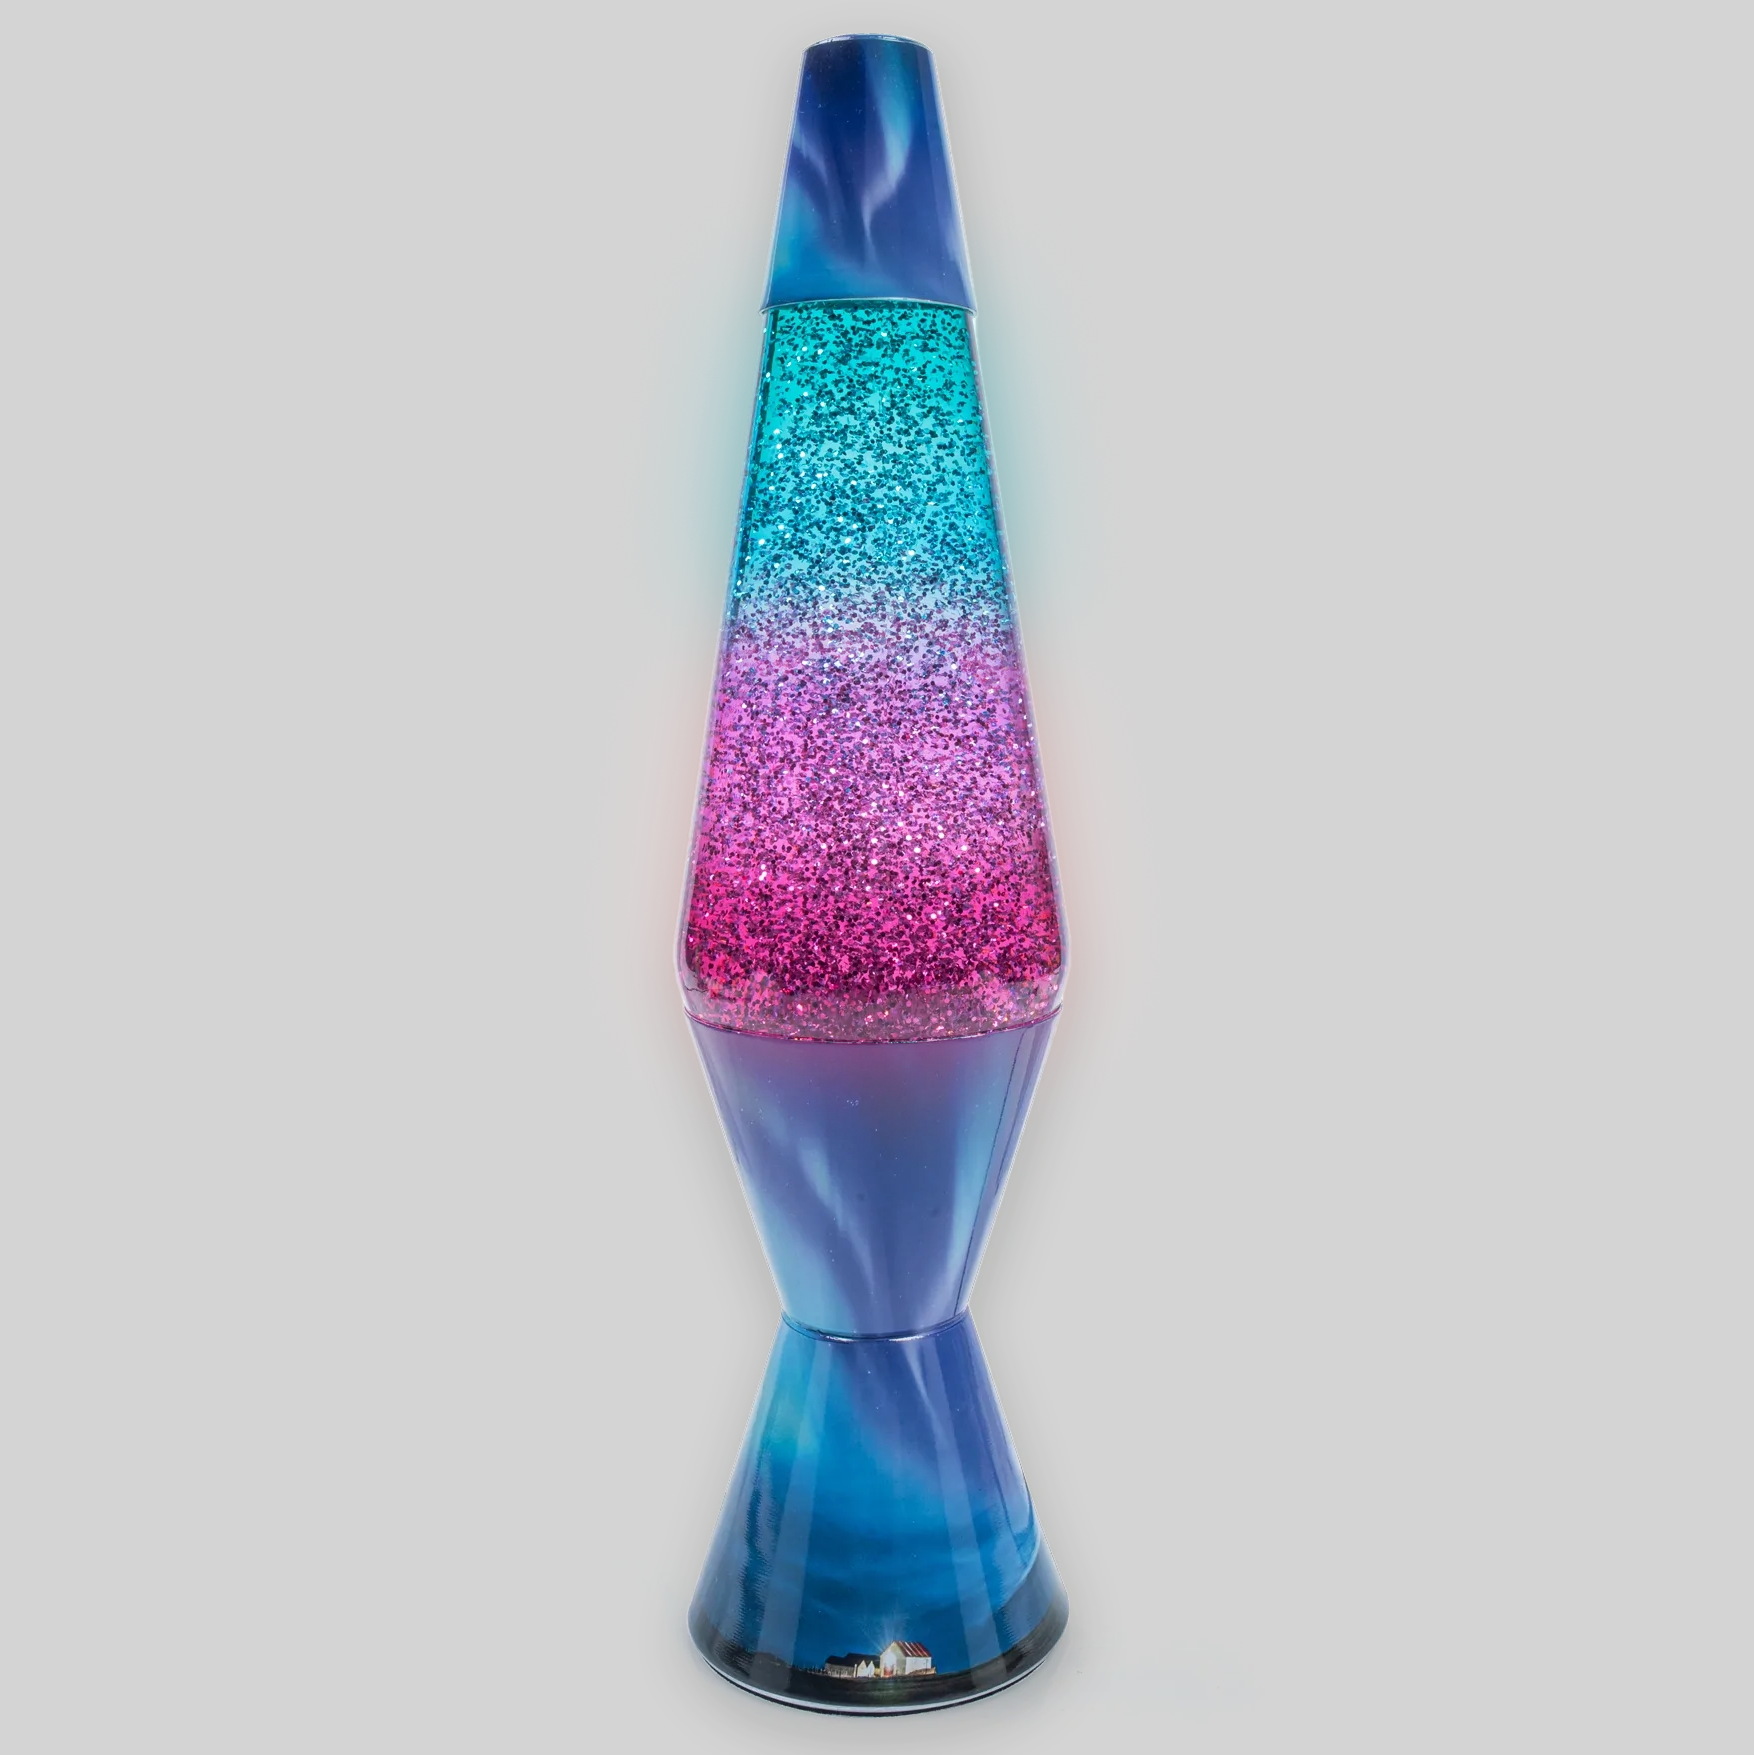 Aurora Diamond Glitter Lamp